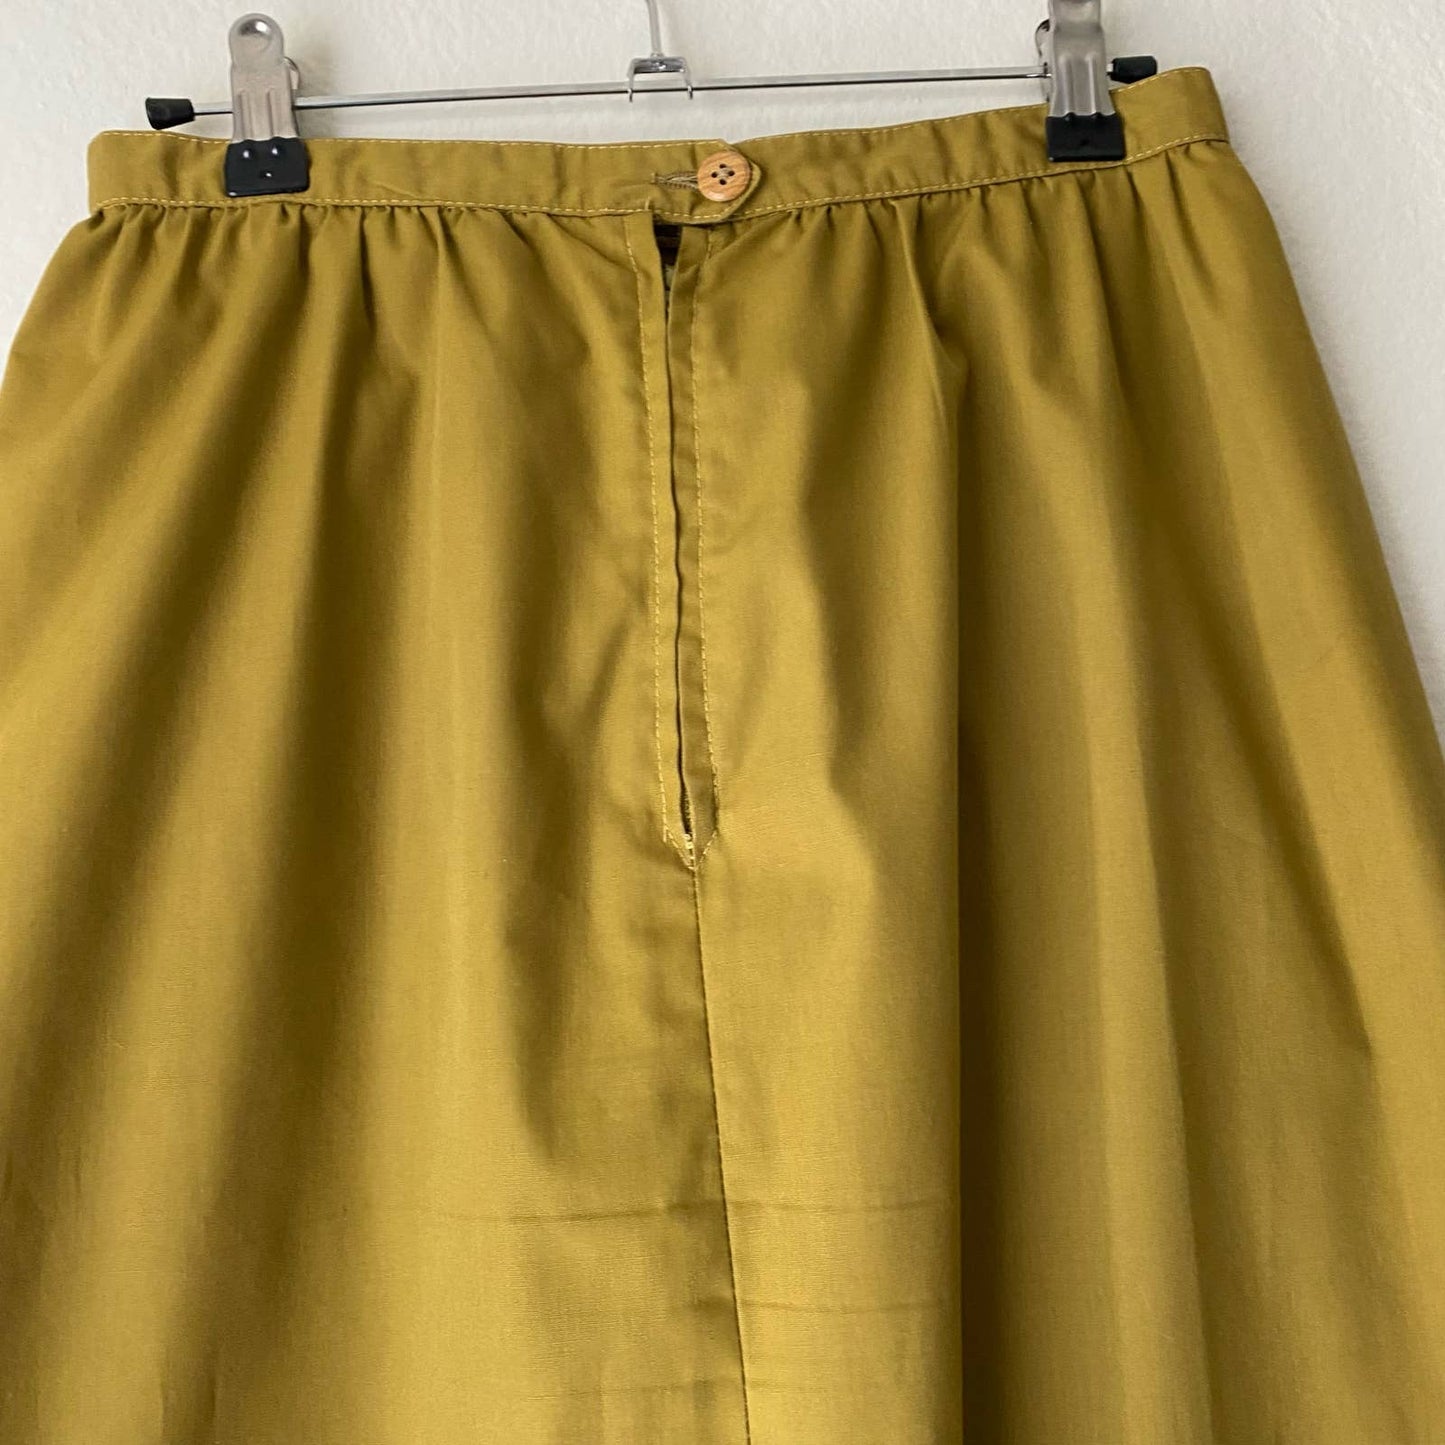 Liz Claiborne sz 6 Vintage a-line pencil skirt